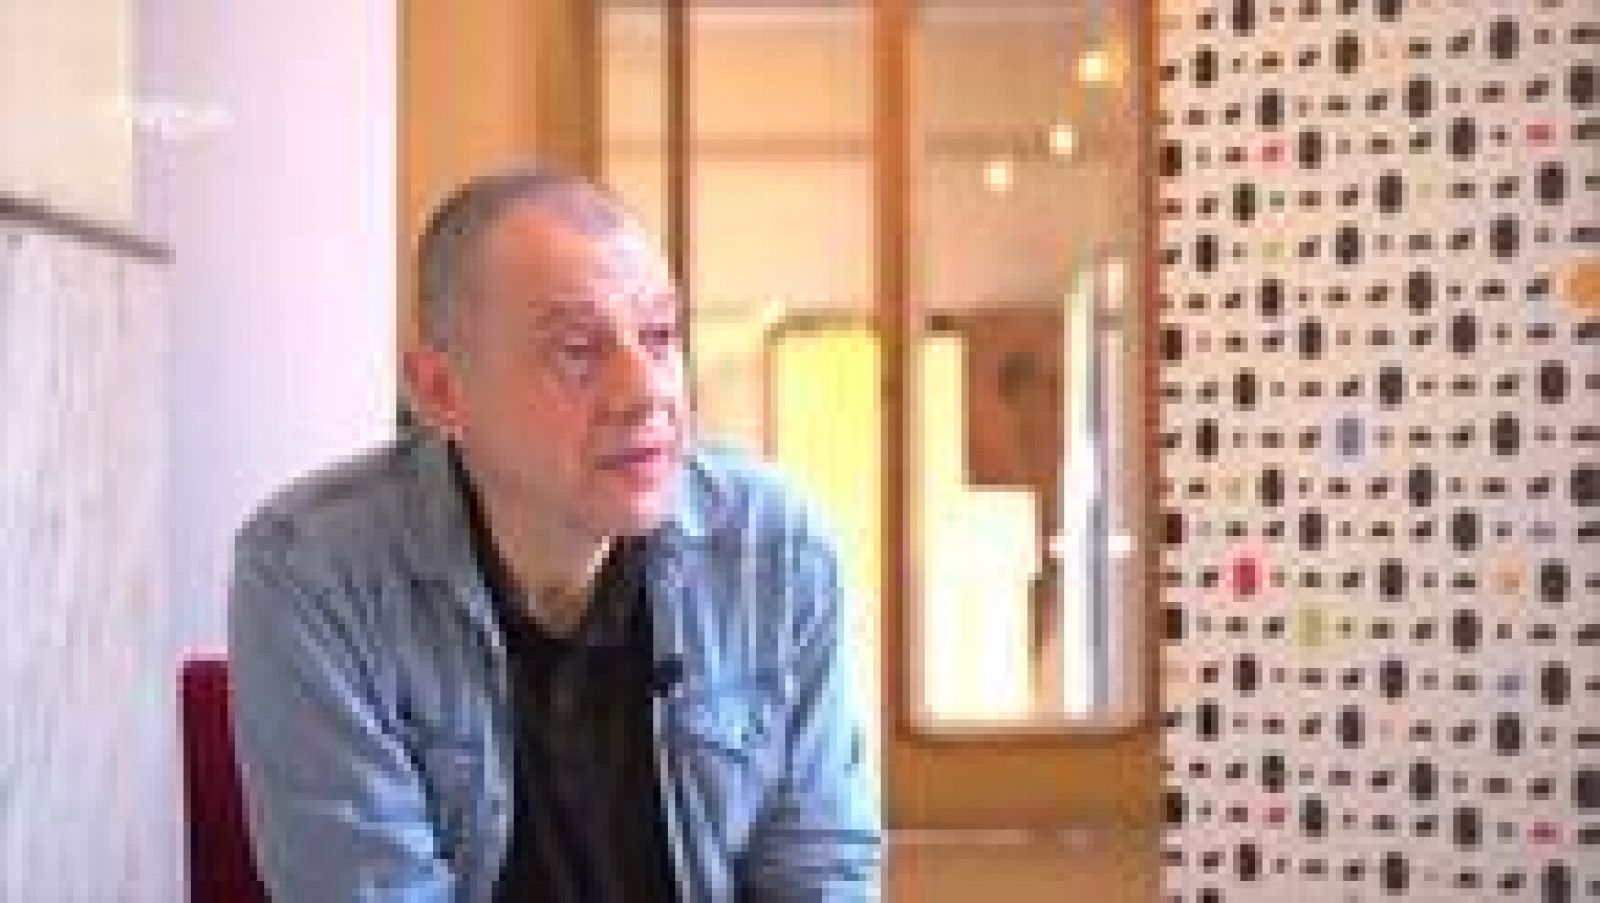  Entrevista con Lluís Pasqual, director de teatro 